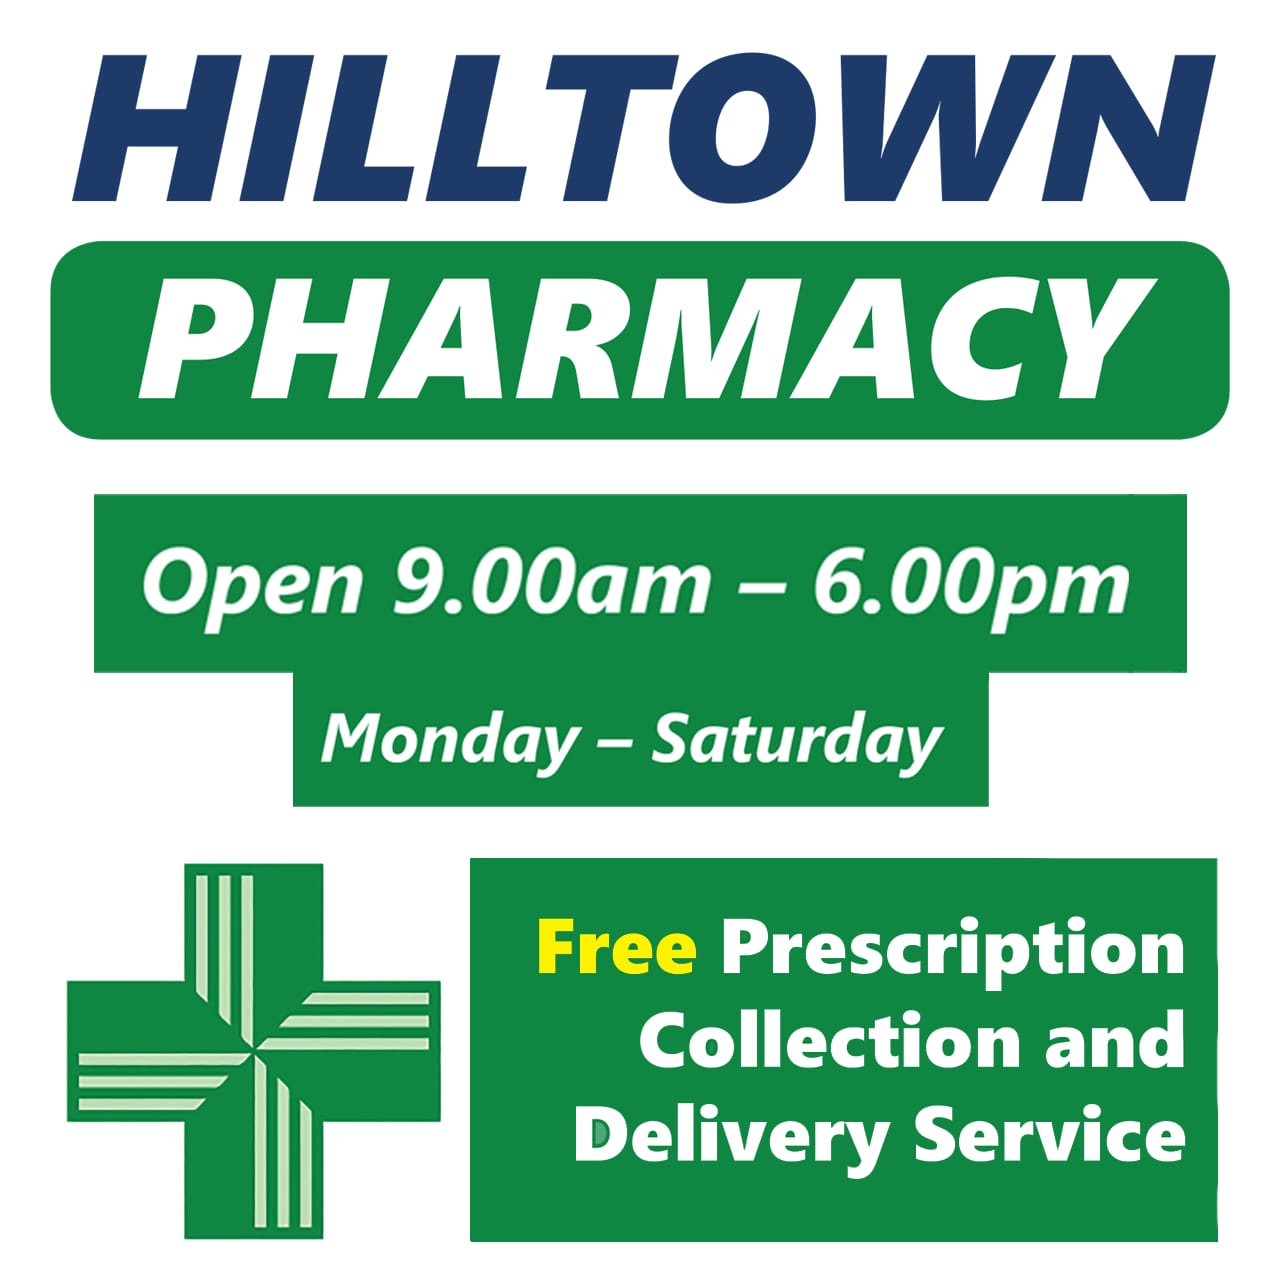 Hilltown Pharmacy